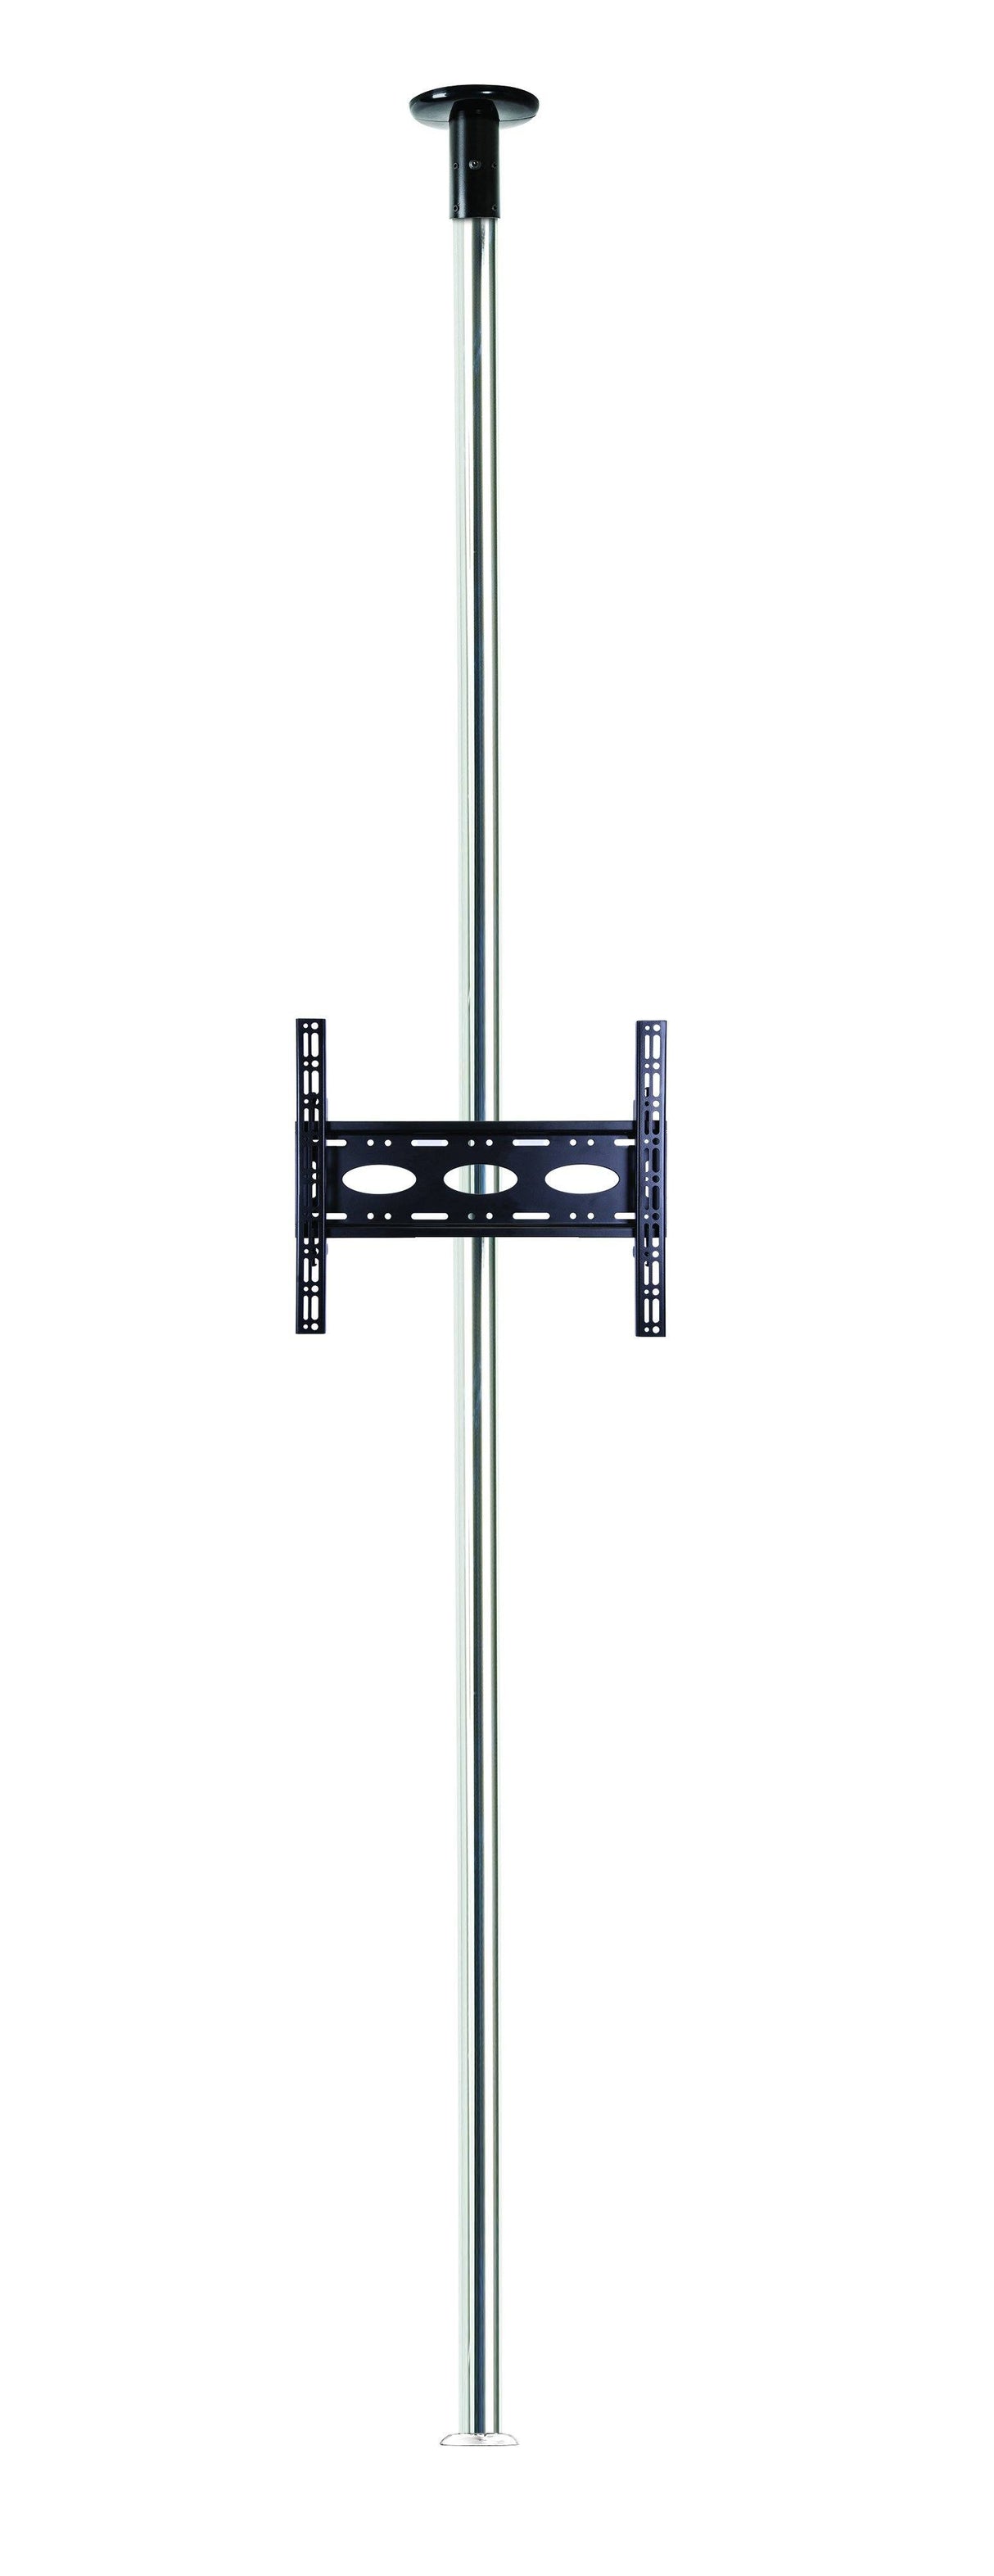 B-Tech BT3MFCLF40-65/C Floor to Ceiling TV Bracket with 3m Chrome Pole